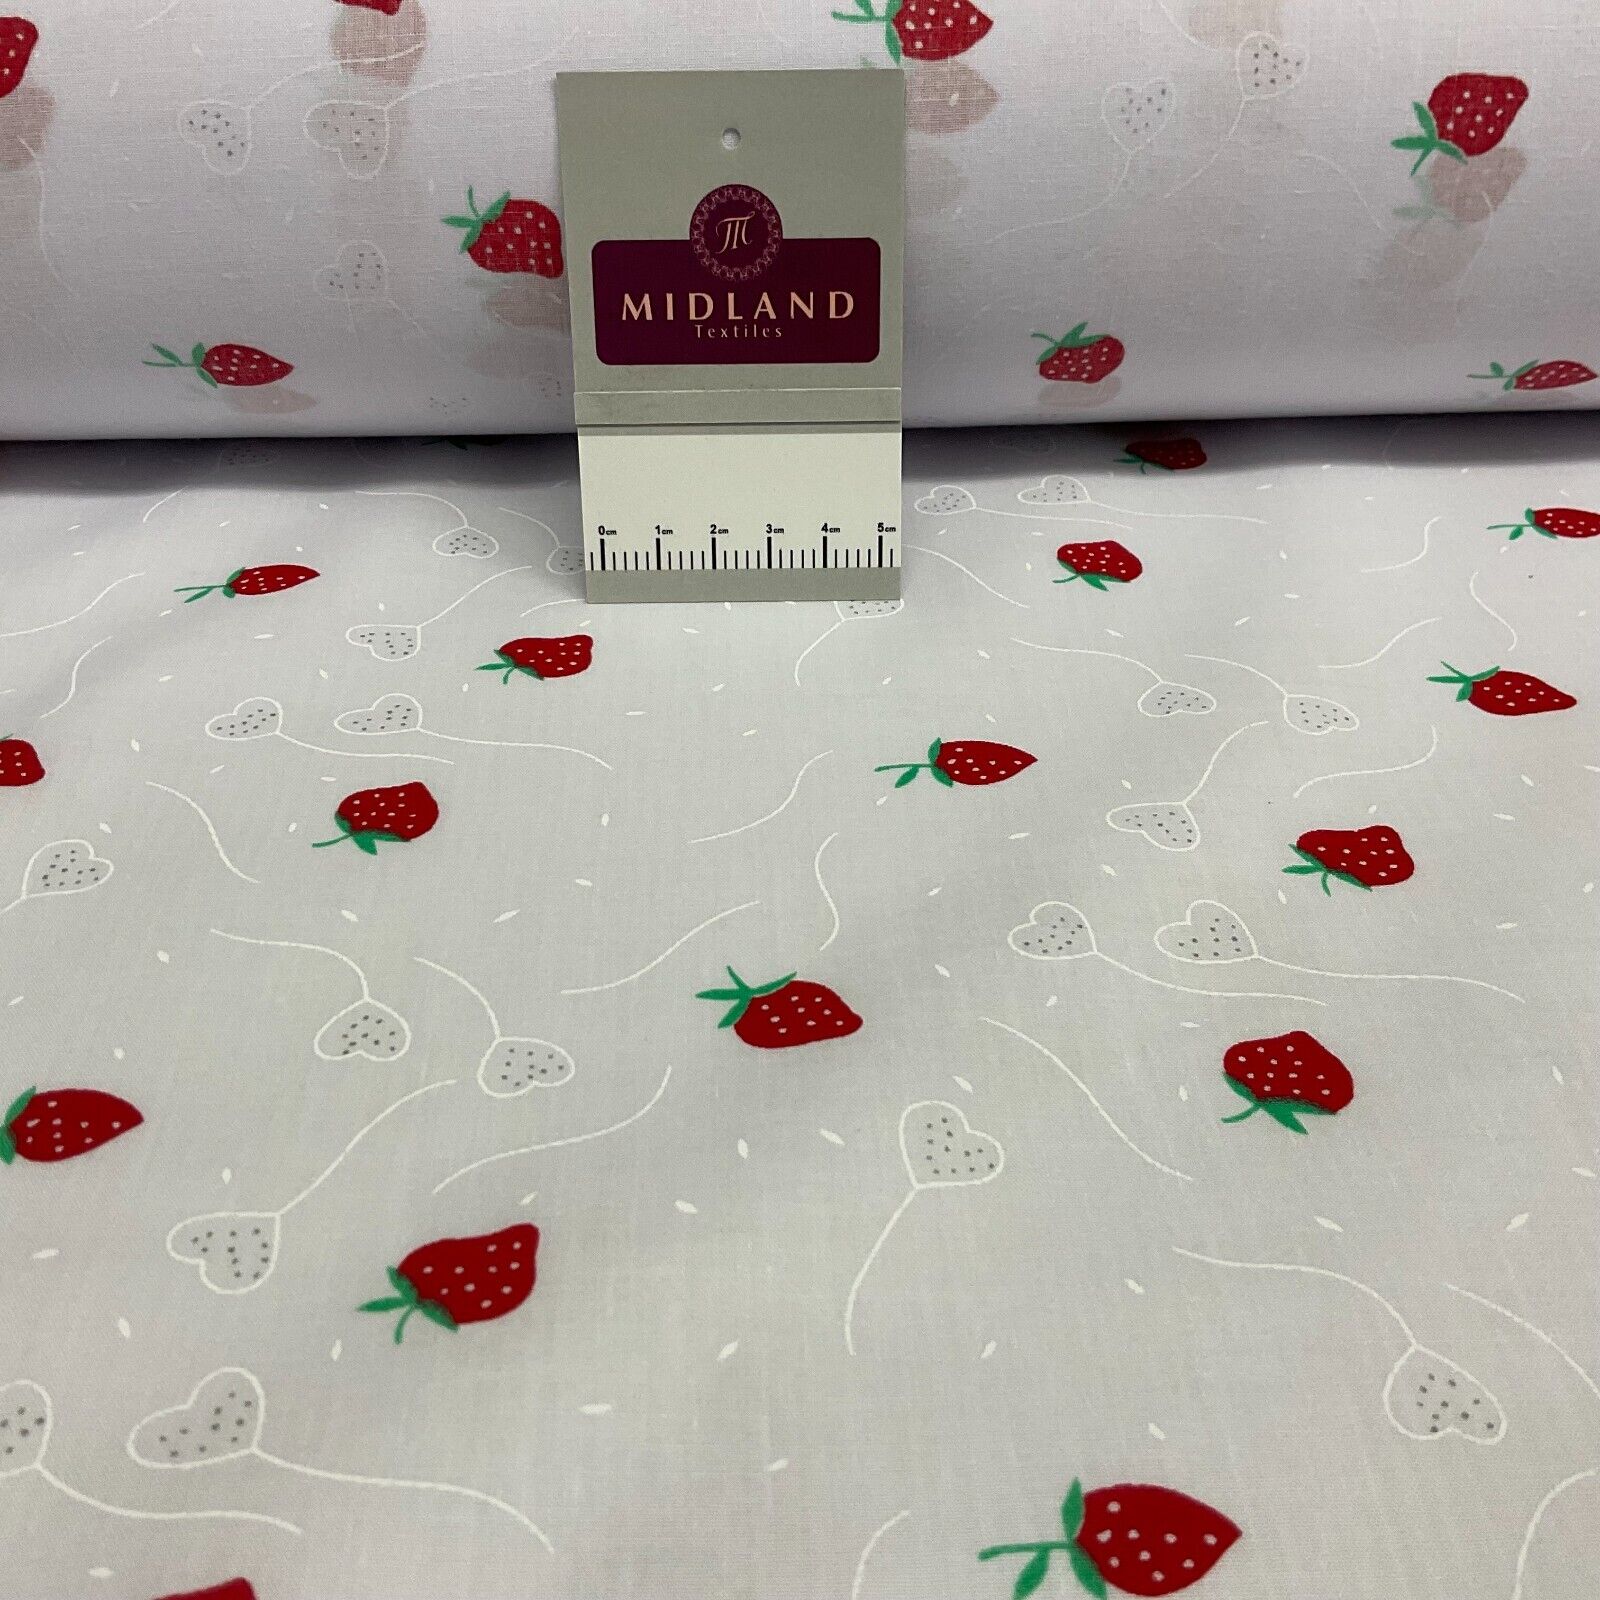 frisk Anmeldelse Forbedring Hvid Jordbær Jordbær Frugt Polybomuldstrykt stof 110 cm m - Midland Textiles